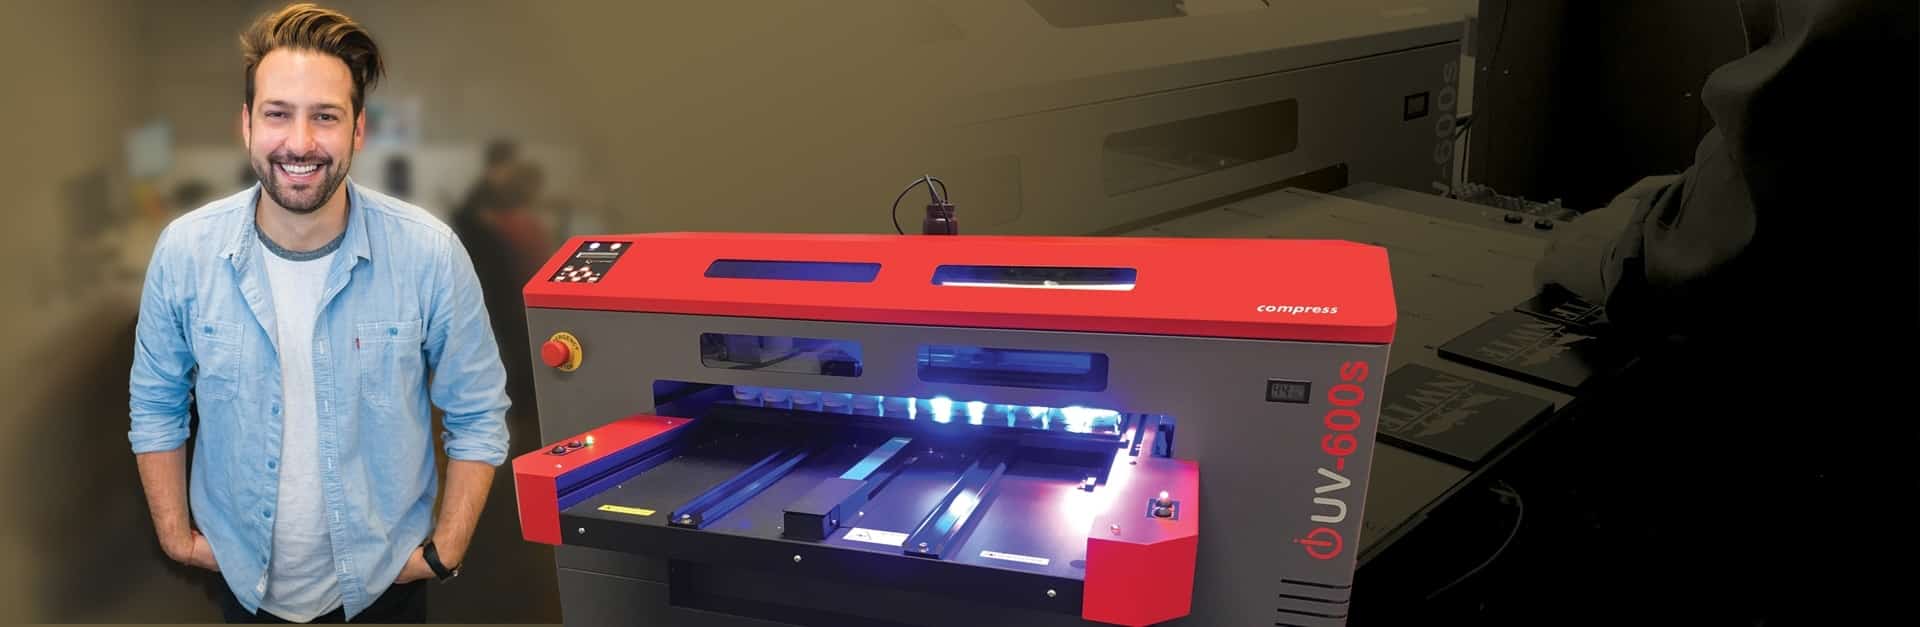 LED UV Printer, Compare for 2022